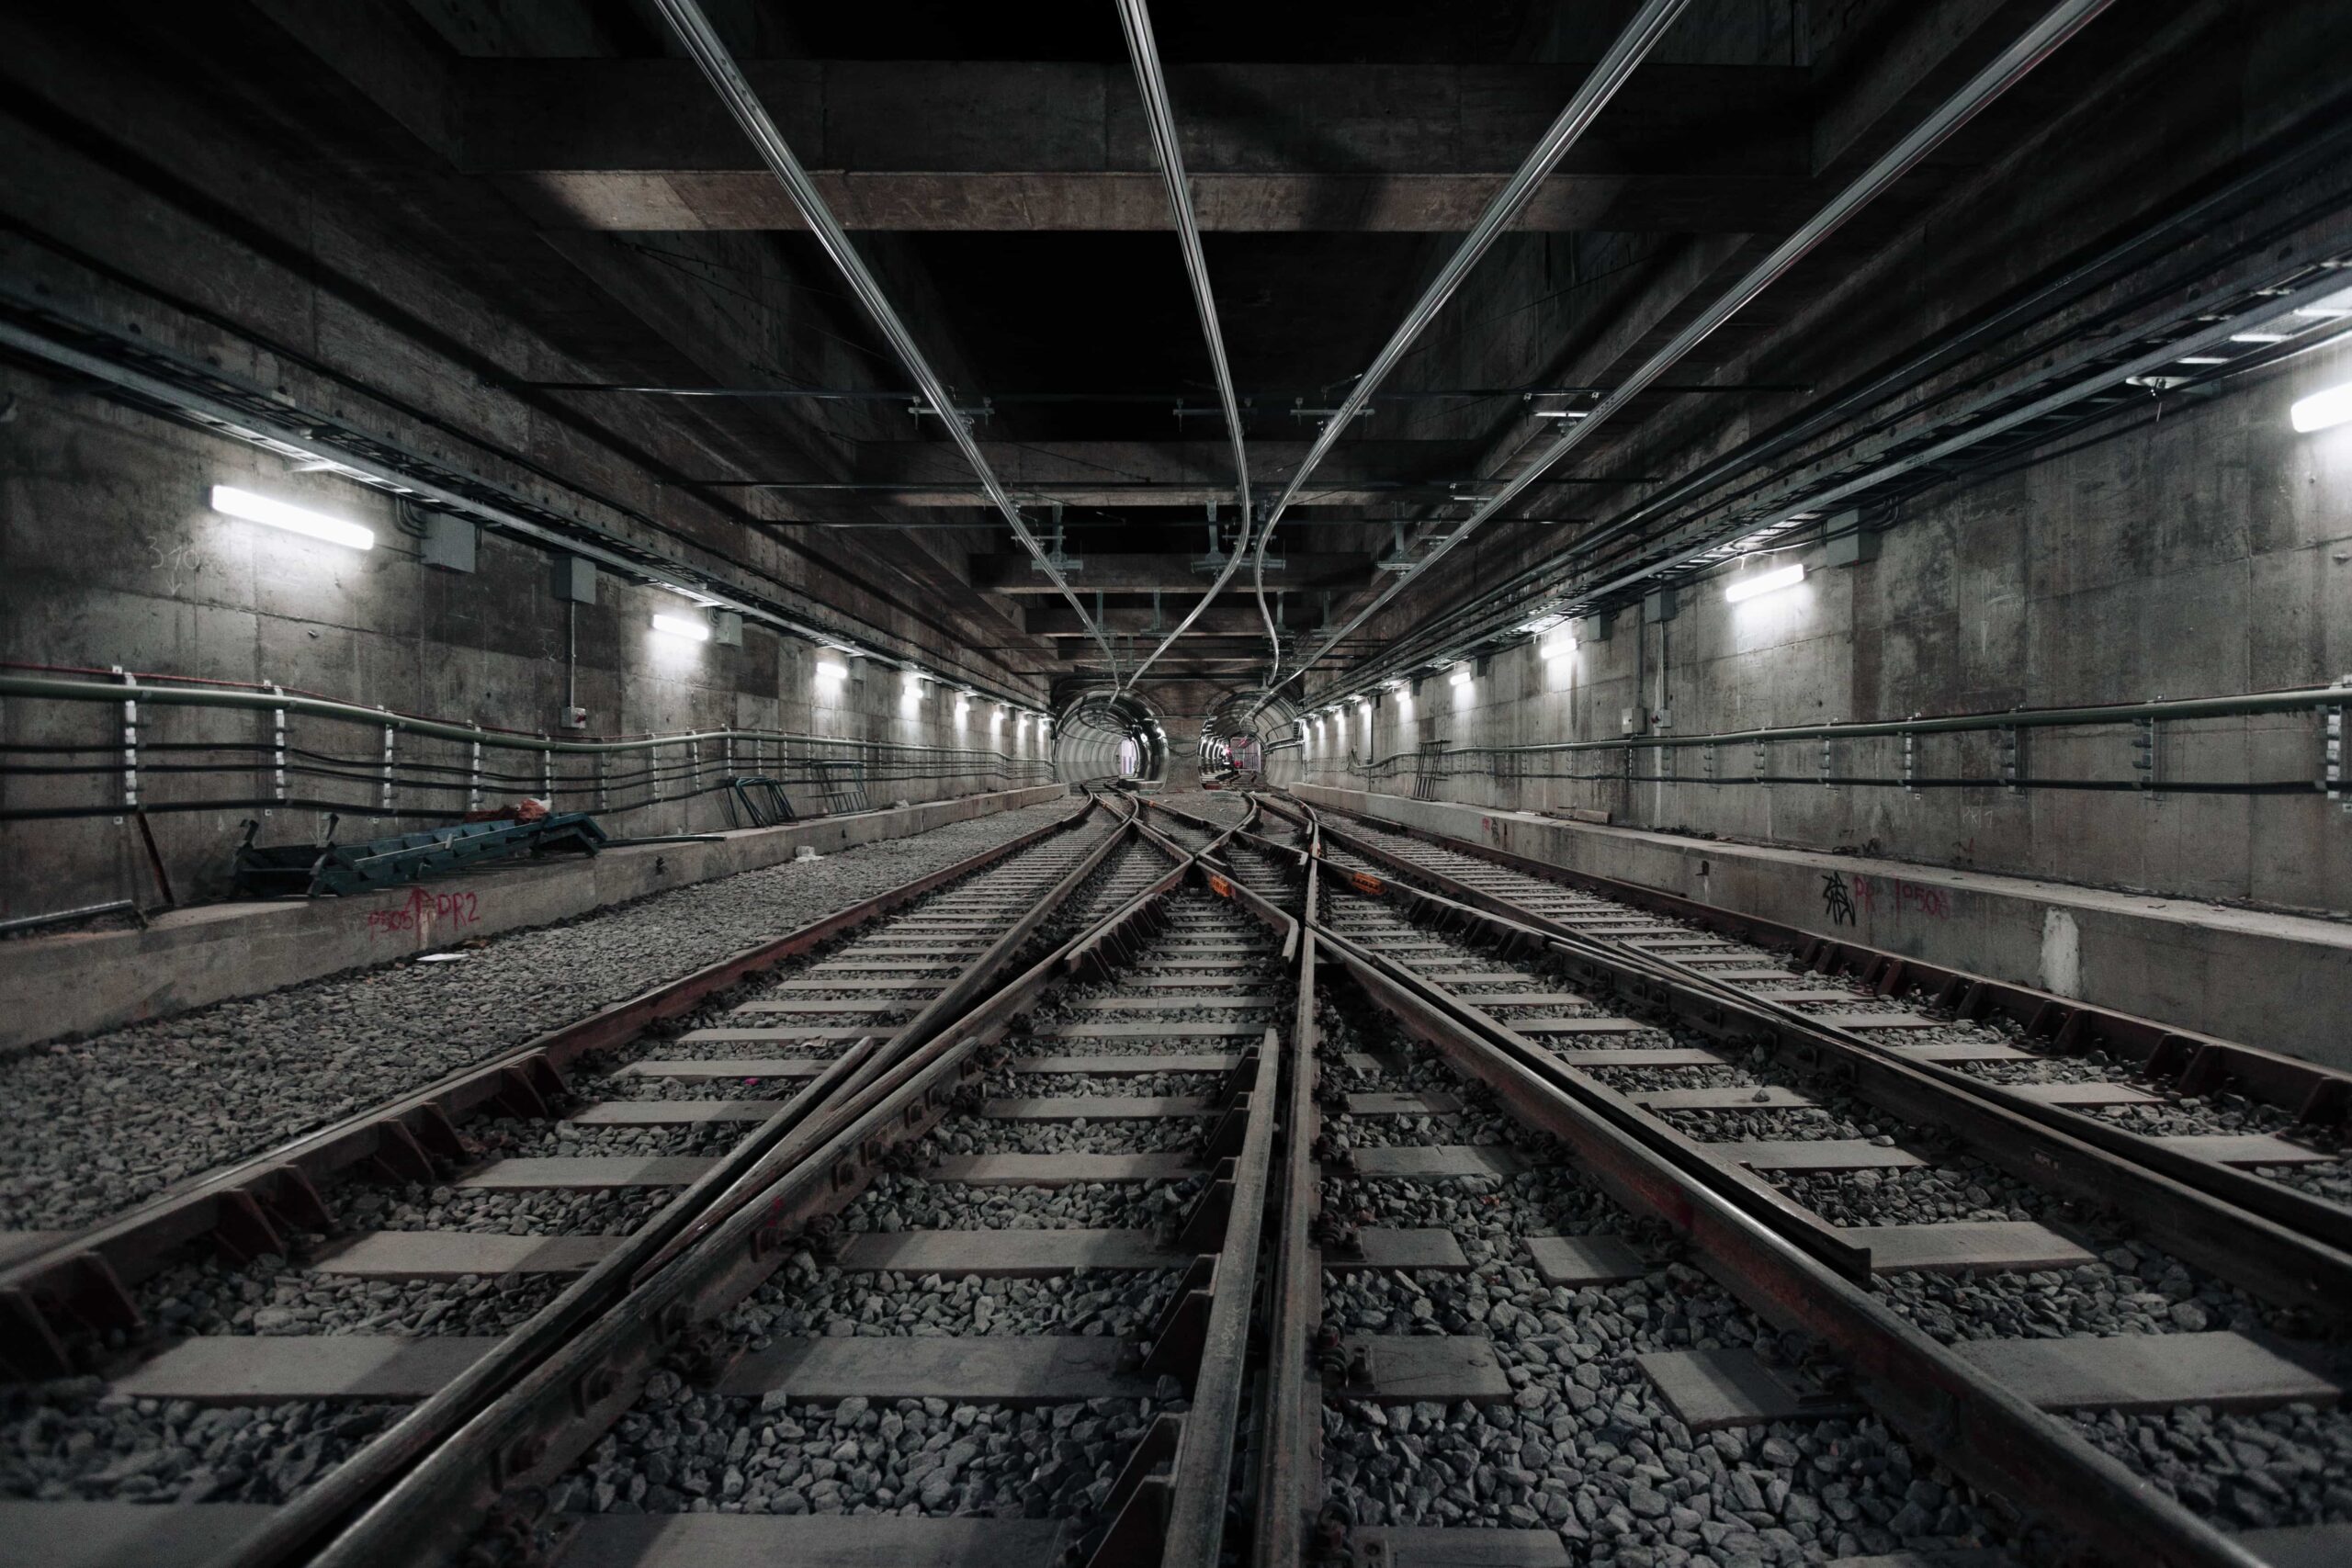 An underground railway tunnel